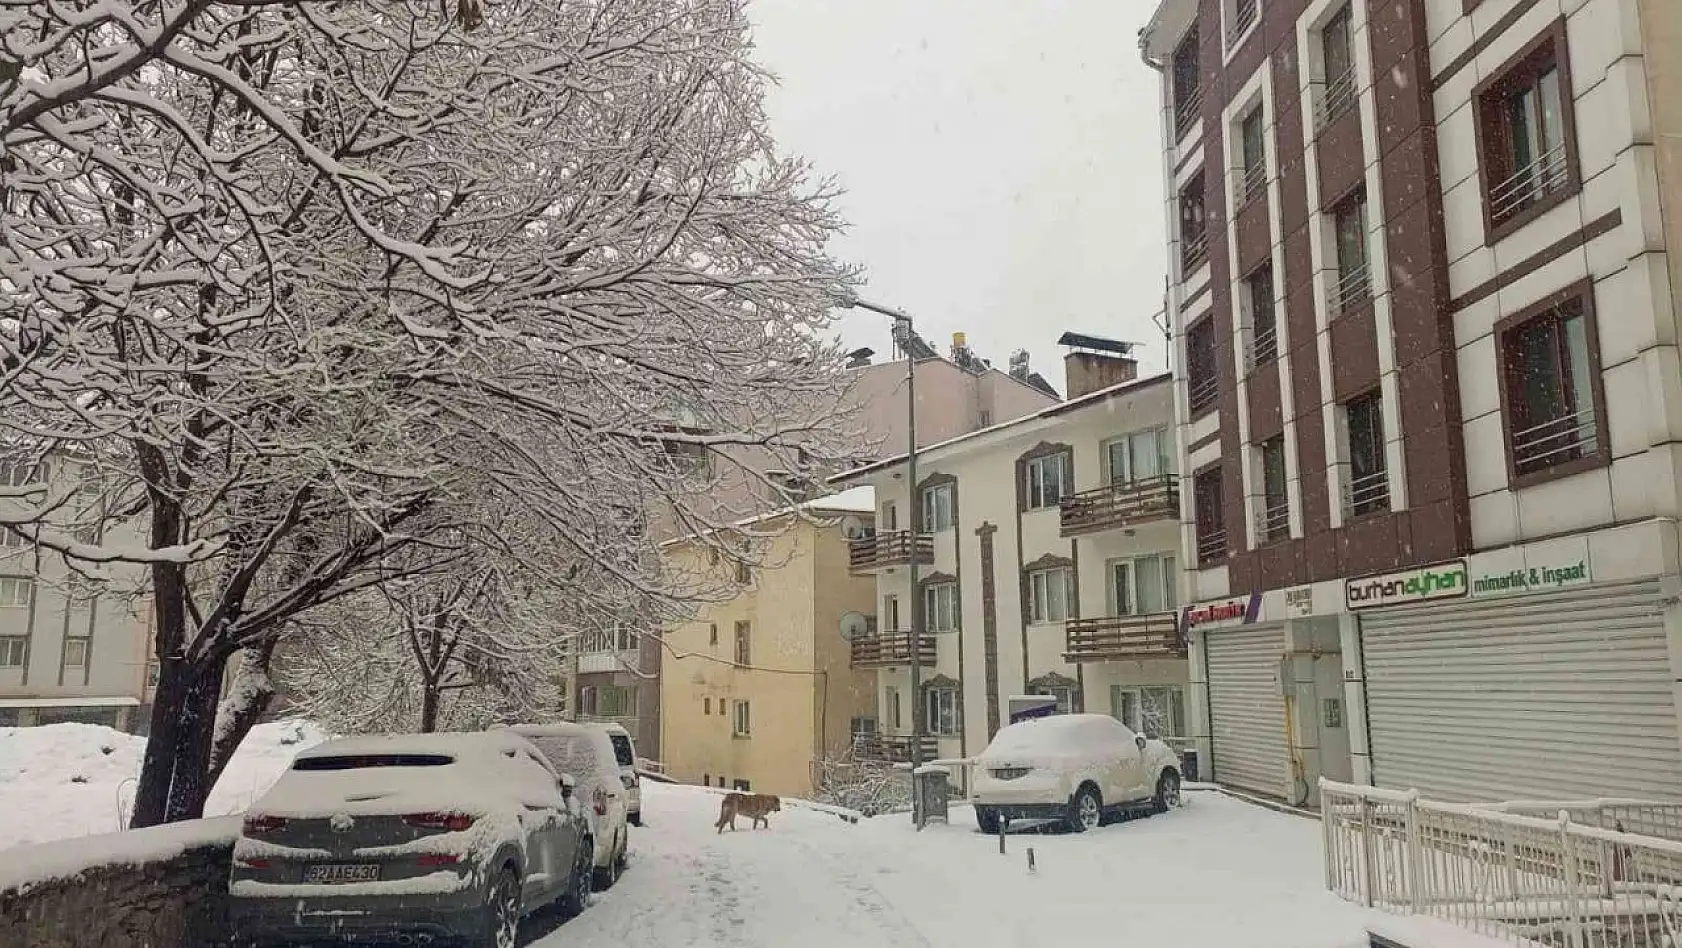 Tunceli'de özlenen kar yağışı başladı